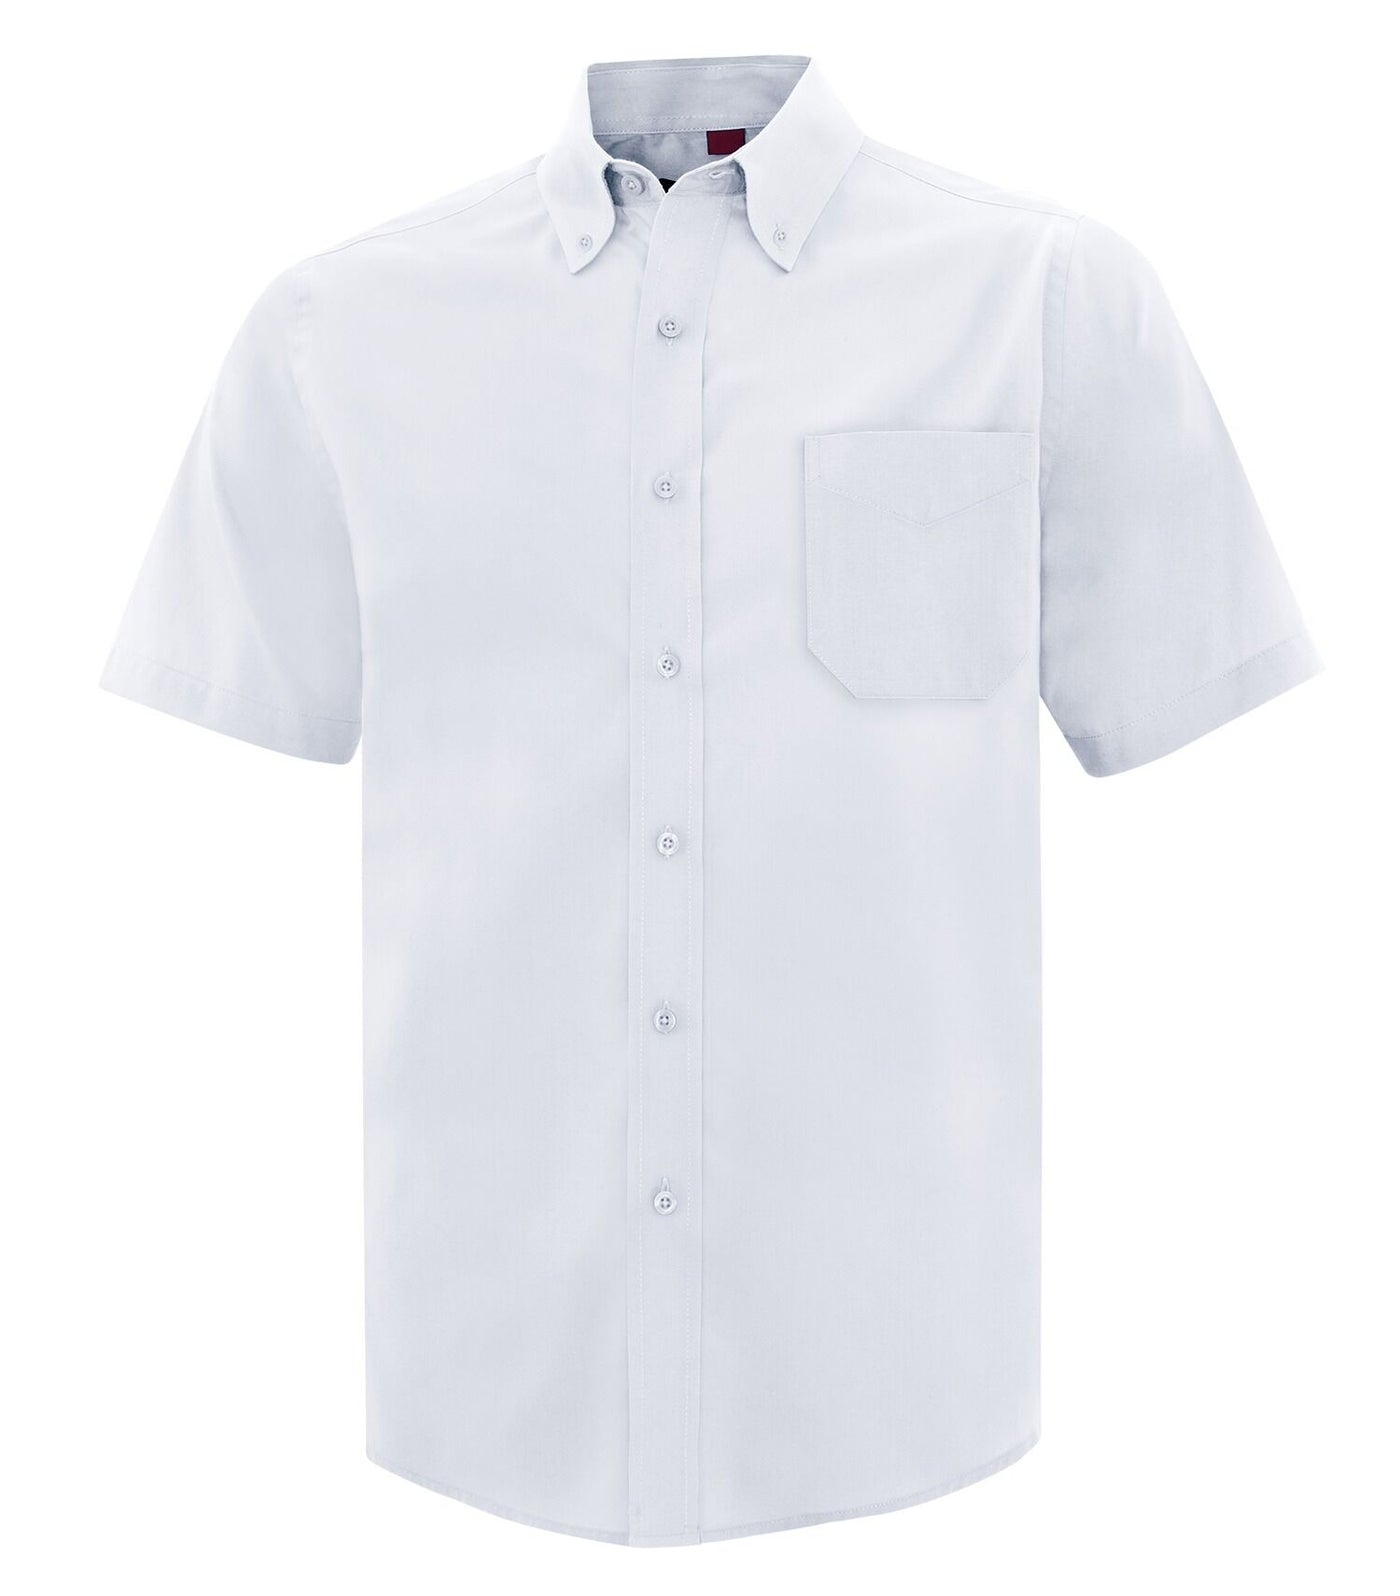 True White - Coal Harbour Men's Short Sleeve Work Shirt